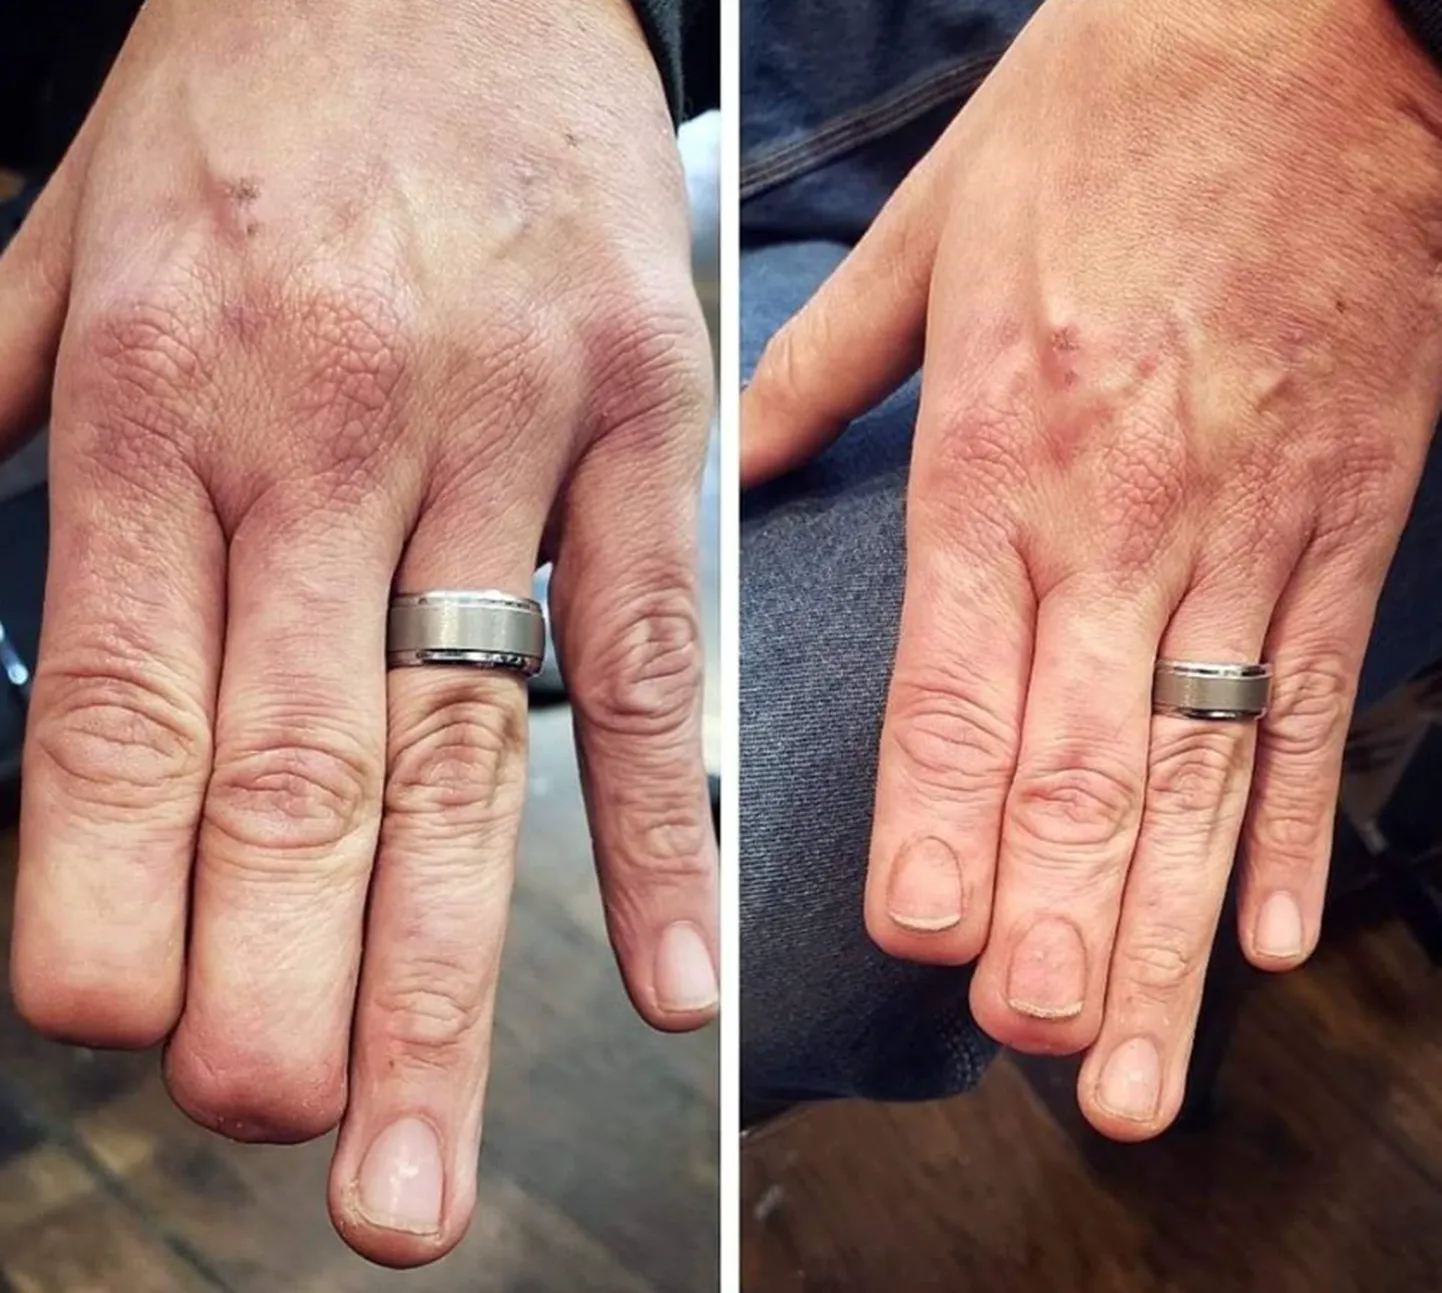 Enne ja pärast. Paremapoolsel pildil võib näha, et kaks sõrme on küll lühemad, aga küüned nendel nagu päris.